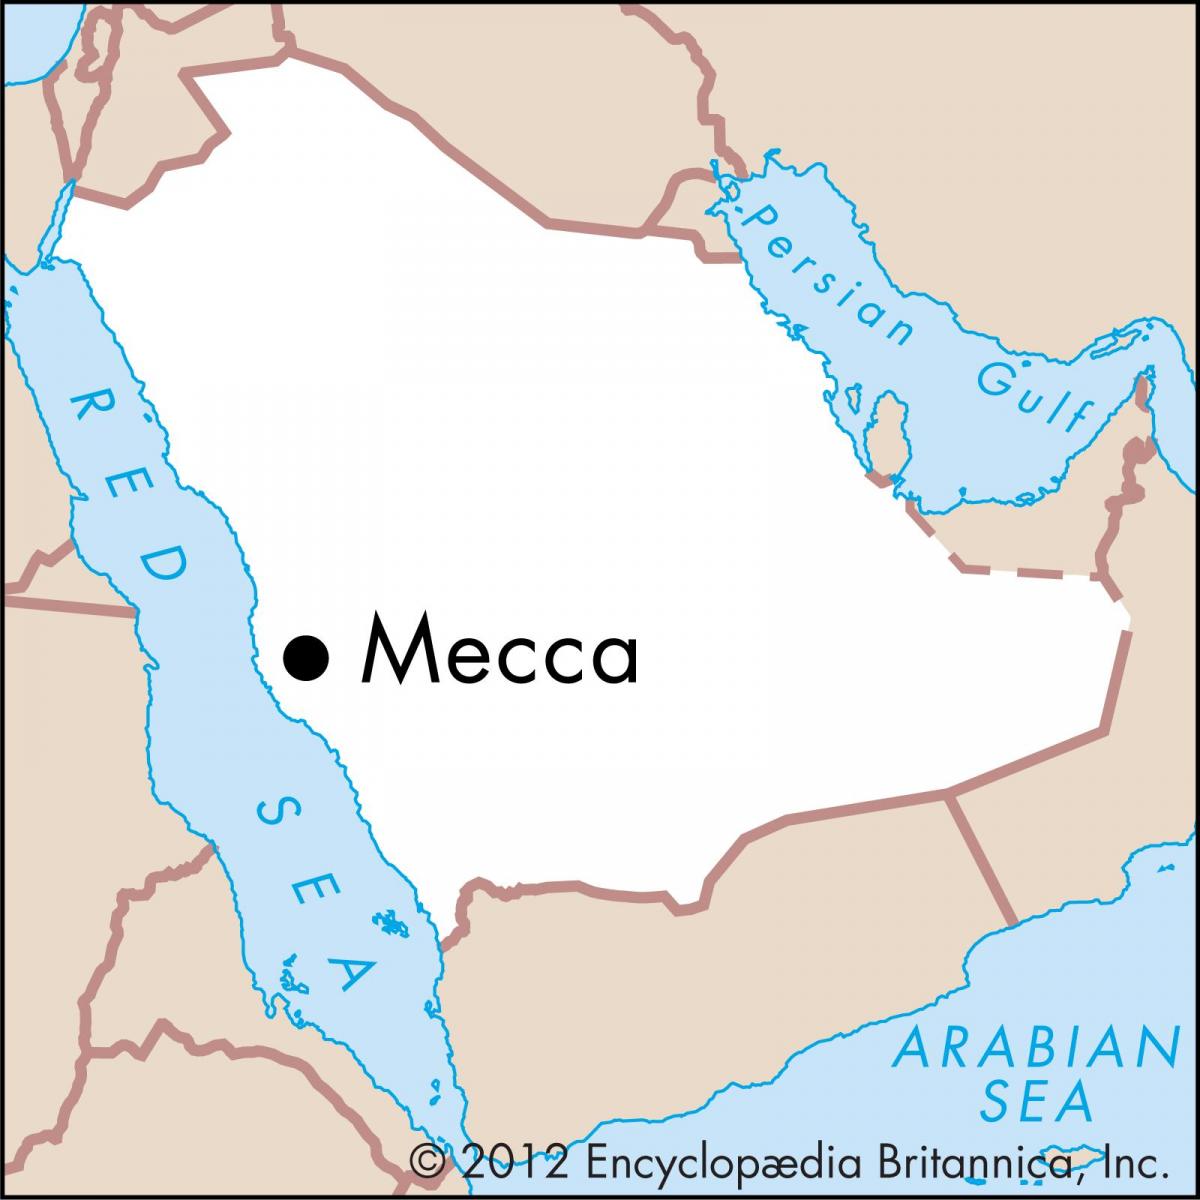 térkép masarat királyság 3 Mekkája